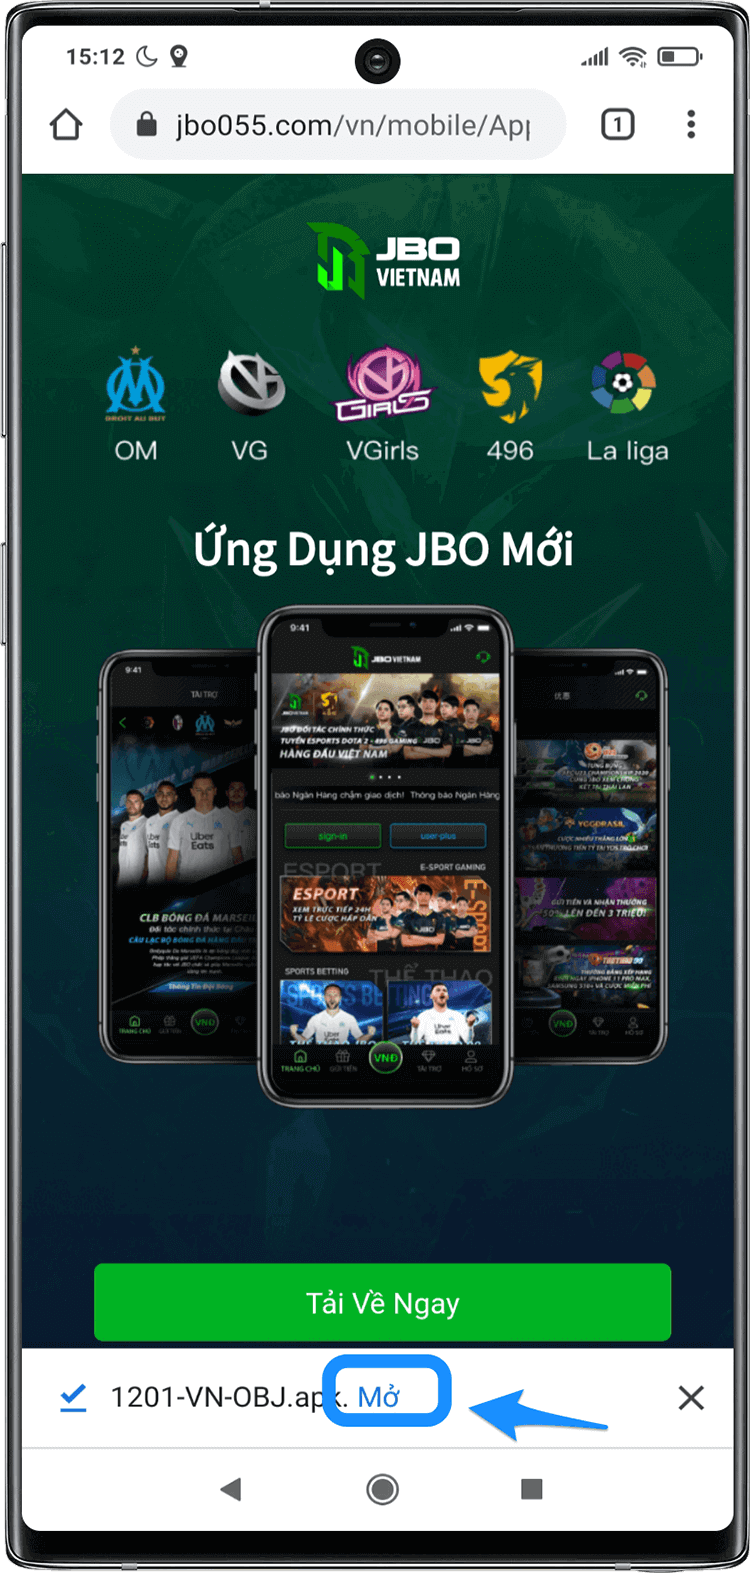 cadomienphi-jbo-huong-dan-tai-app-11